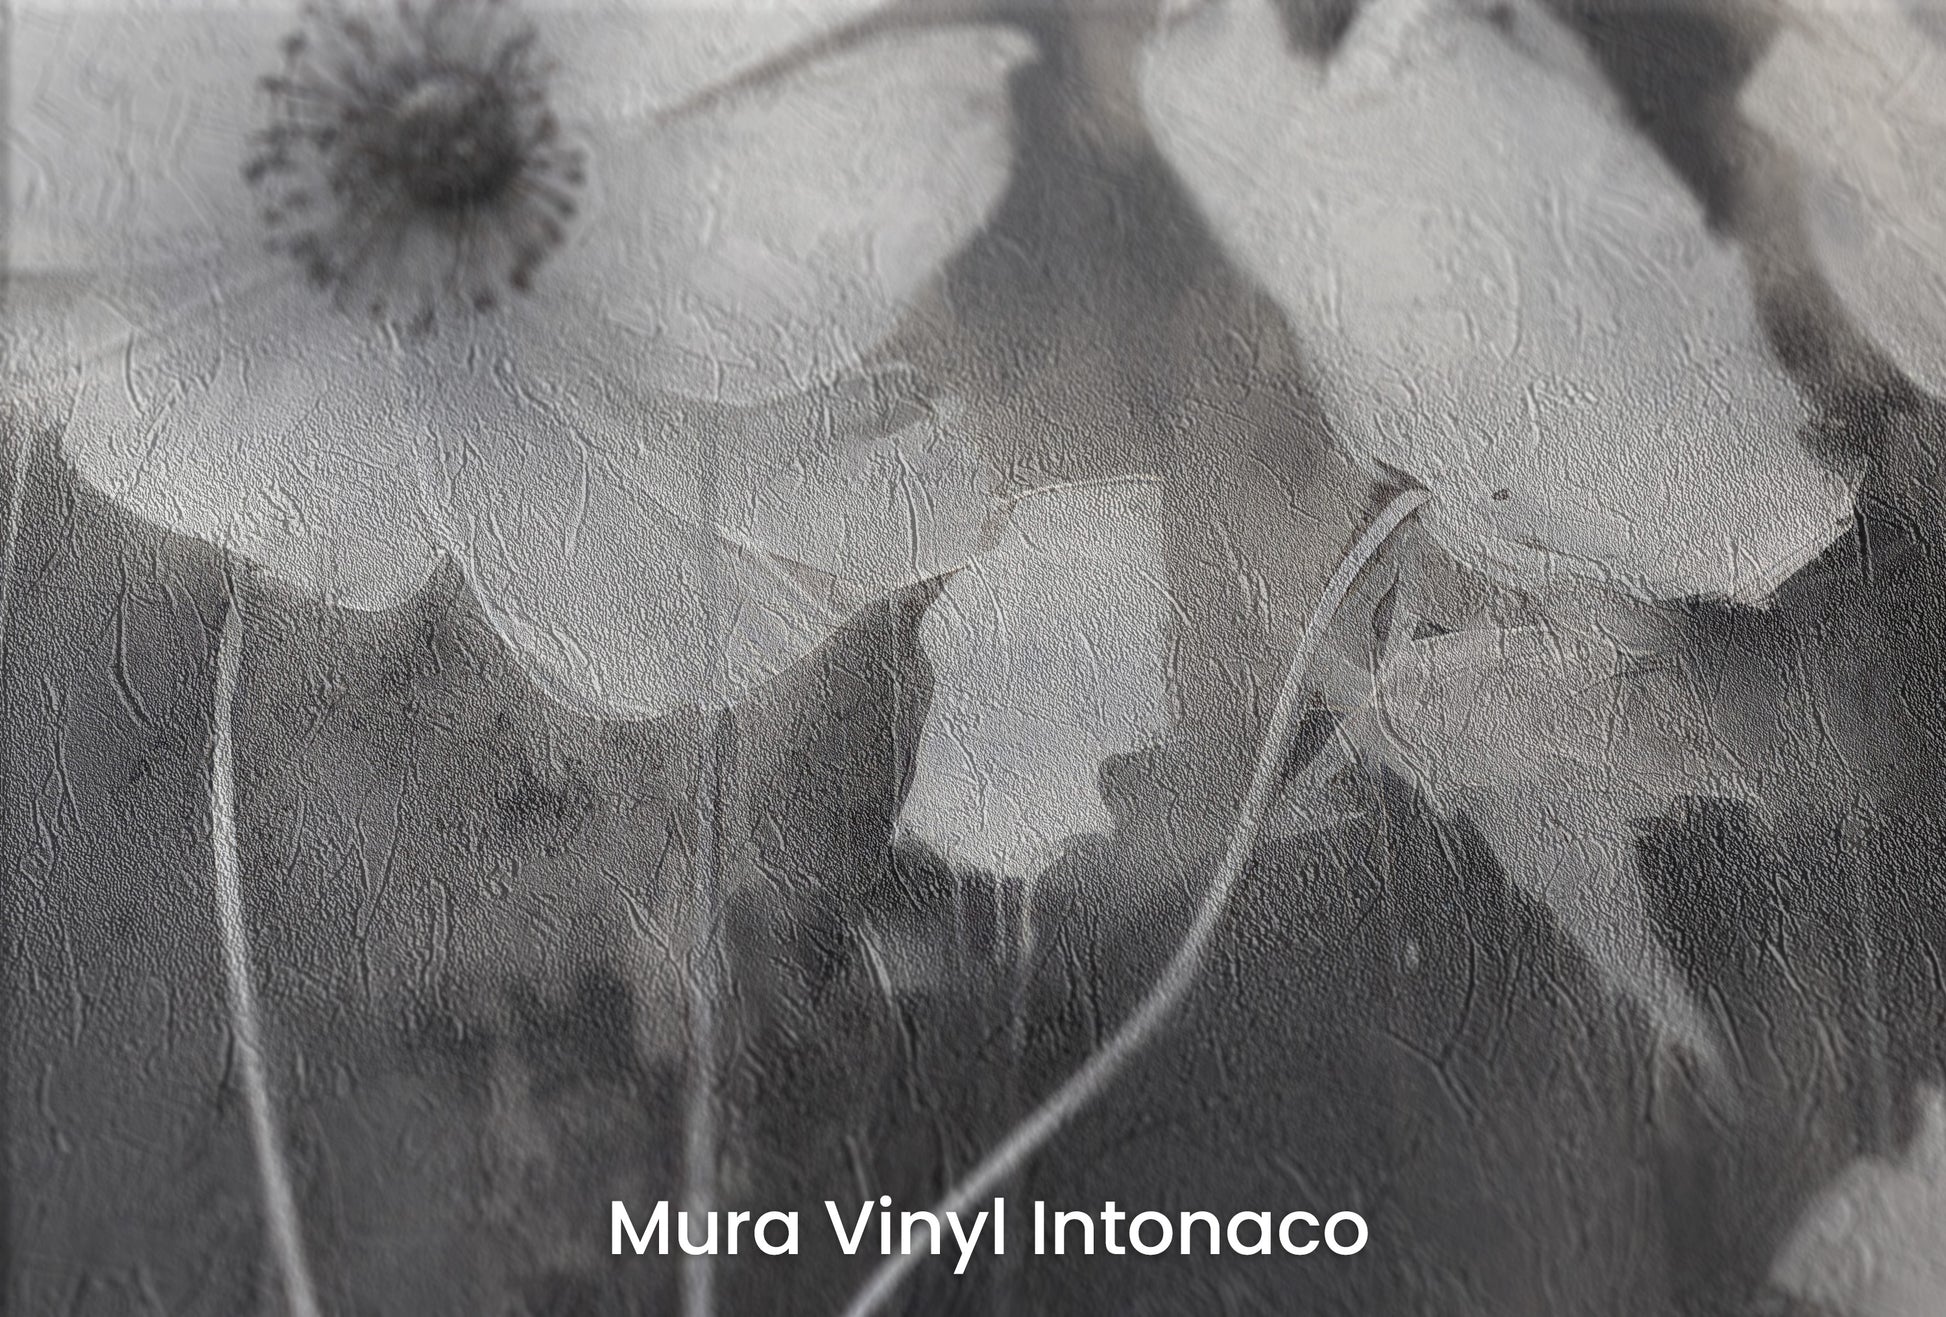 Zbliżenie na artystyczną fototapetę o nazwie NOCTURNAL BLOOMS na podłożu Mura Vinyl Intonaco - struktura tartego tynku.